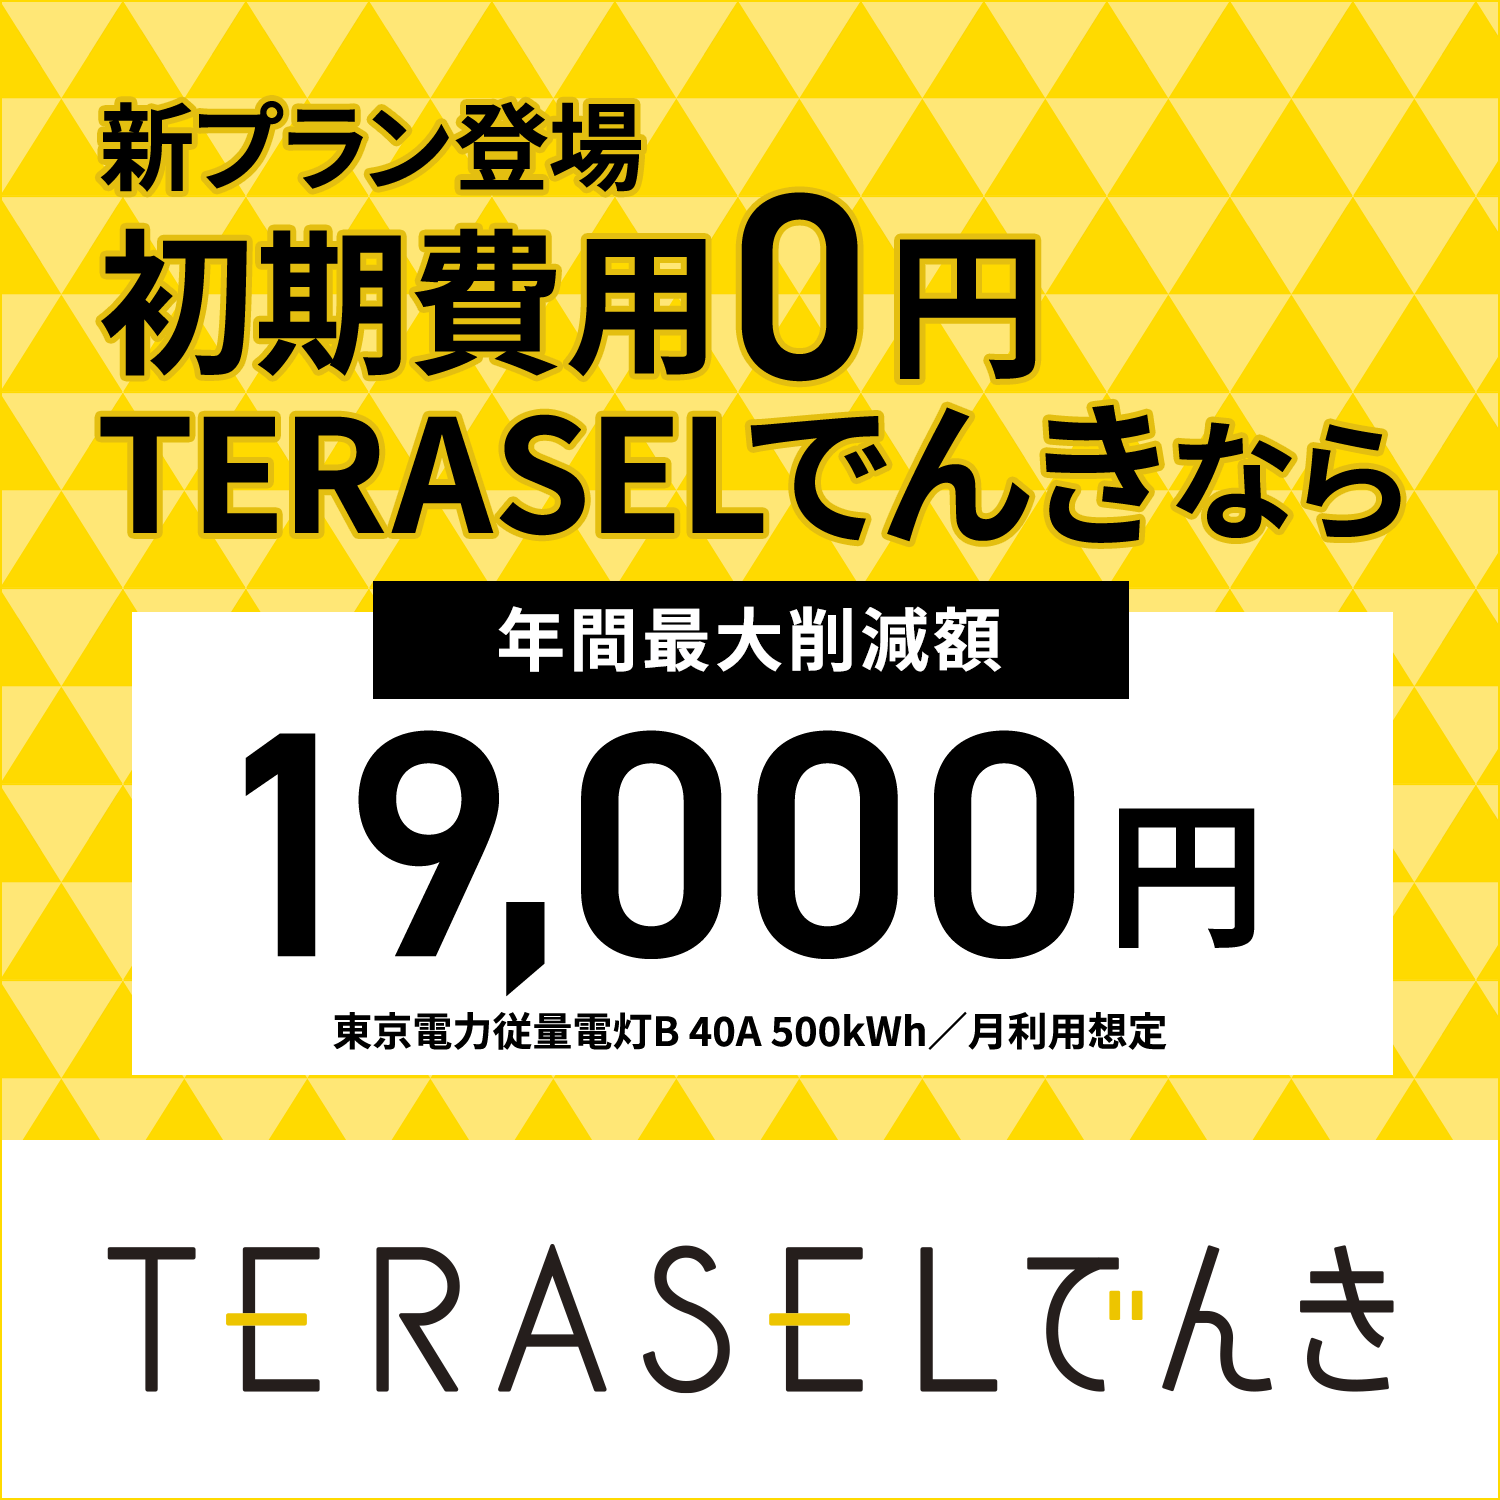 新プラン登場 初期費用0円 TERASELでんきなら年間最大削減額19000円